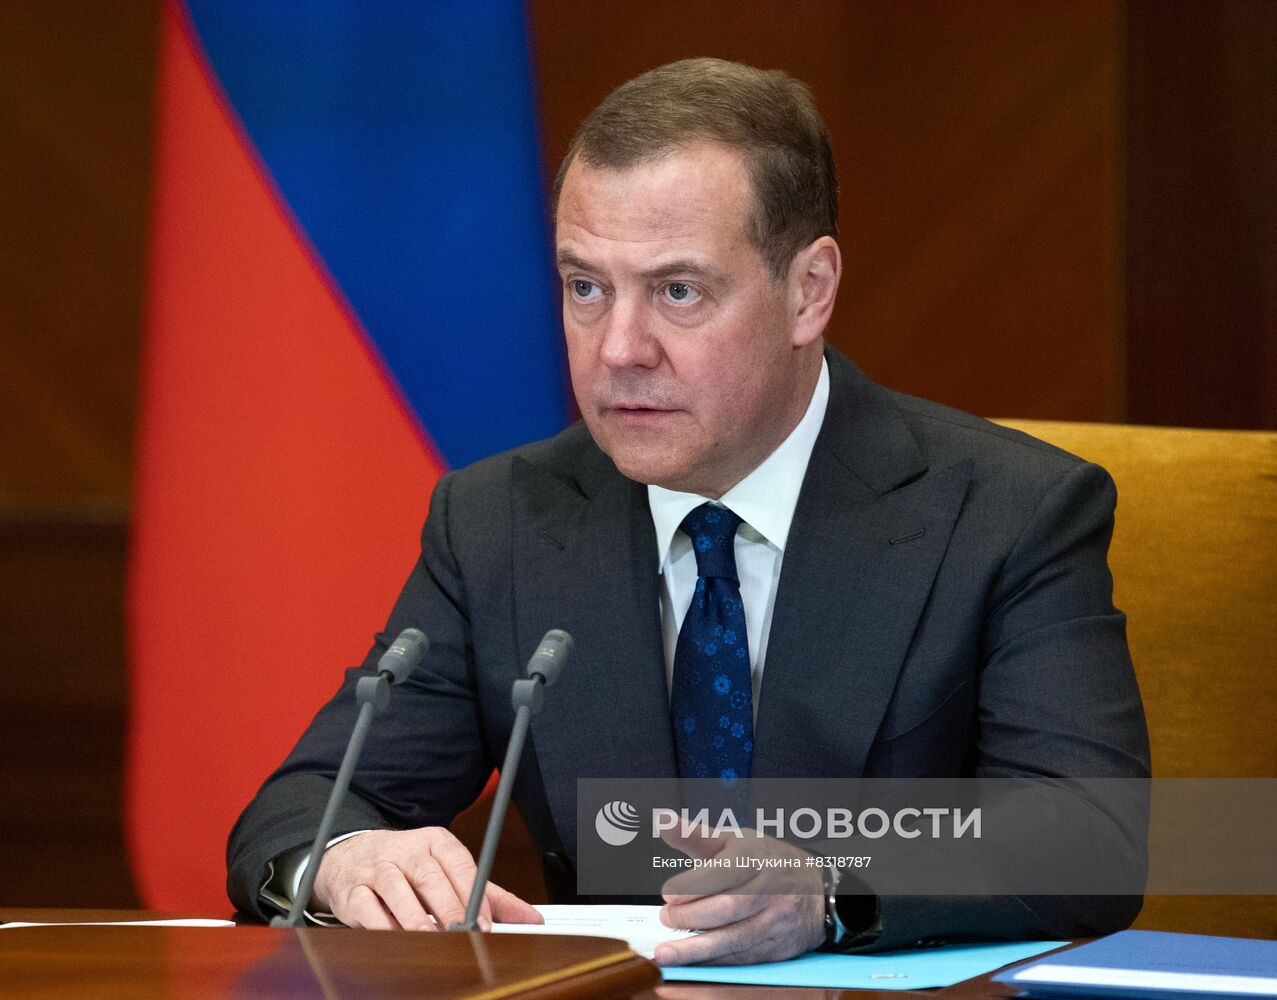 Зампред Совбеза РФ Д. Медведев провел заседание межведомственной комиссии СБ по обеспечению технологического суверенитета государства